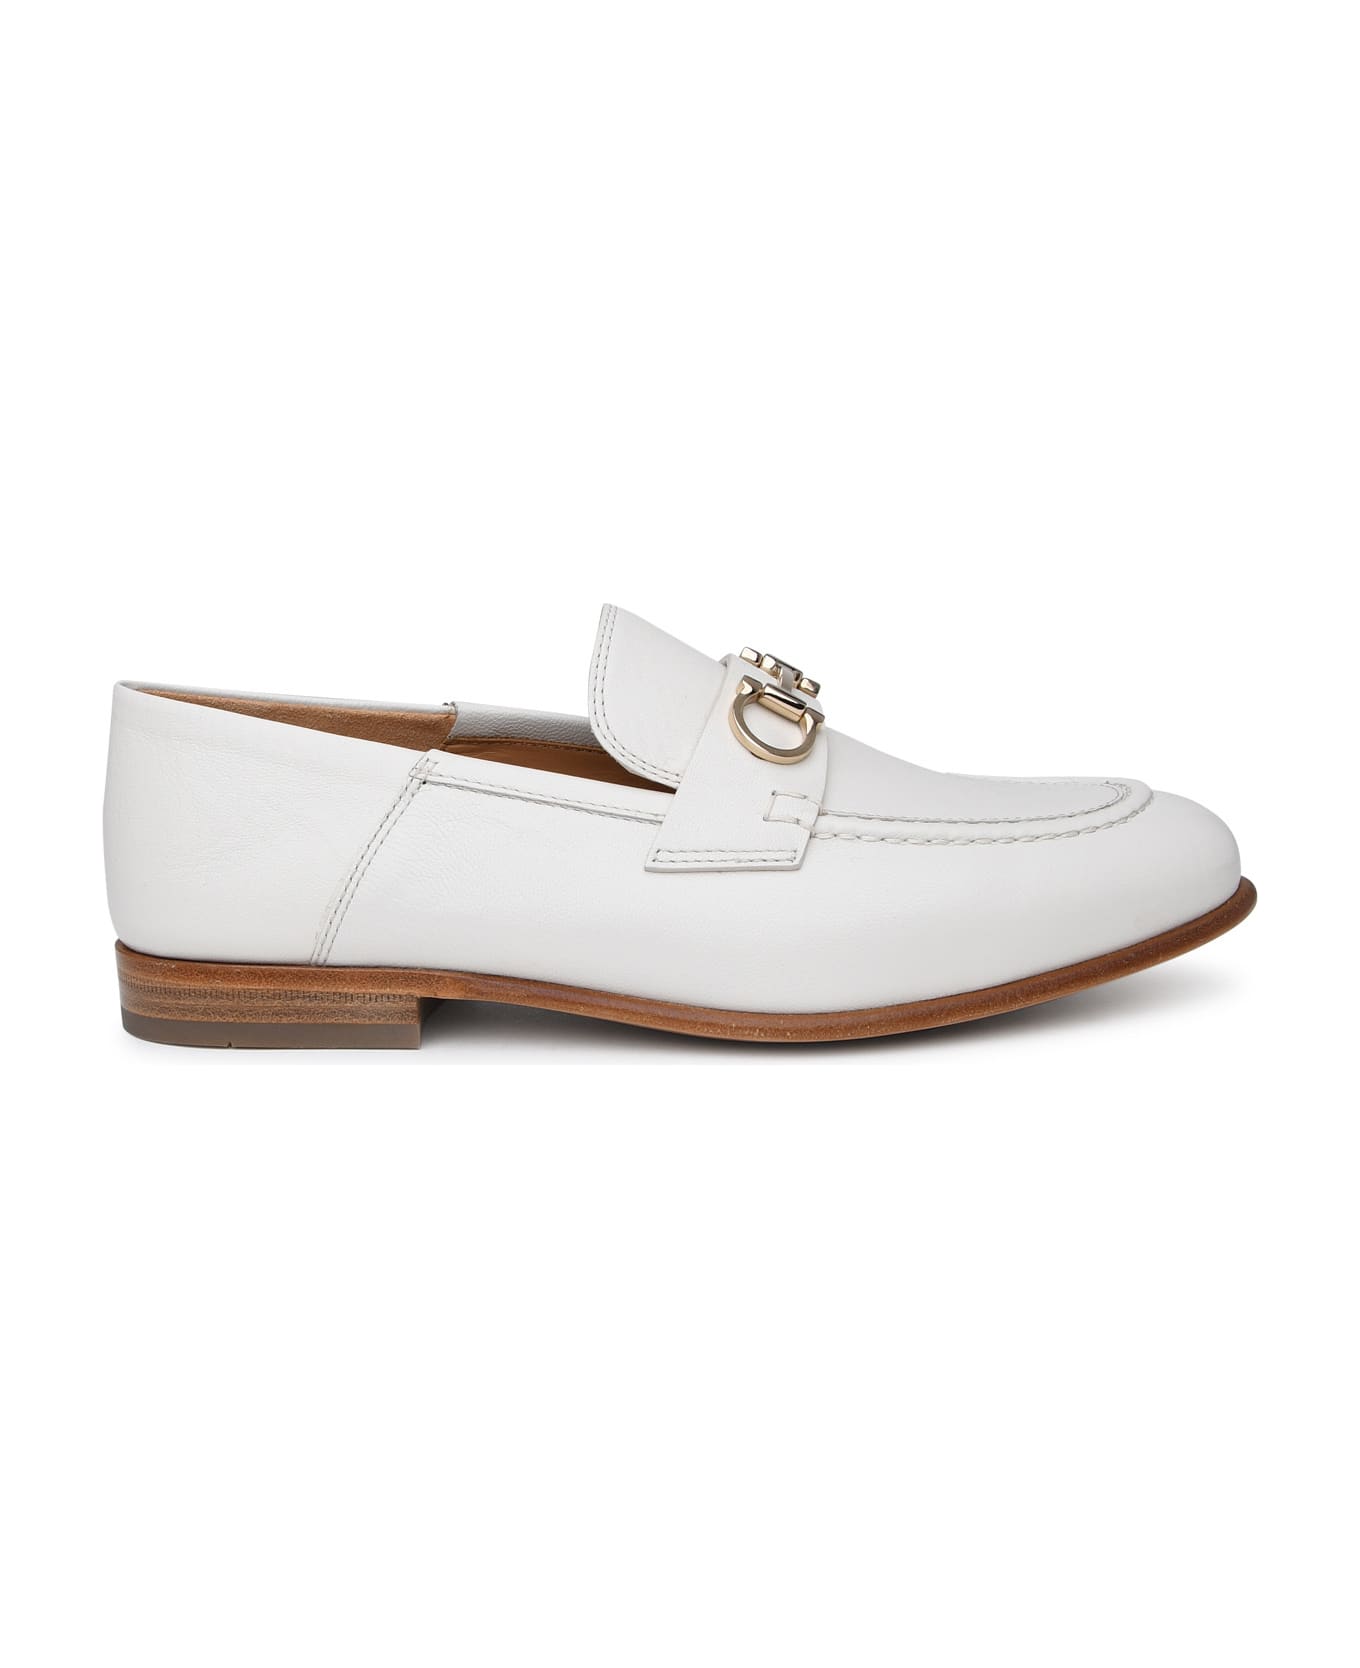 Ferragamo White Leather Loafers - Cream